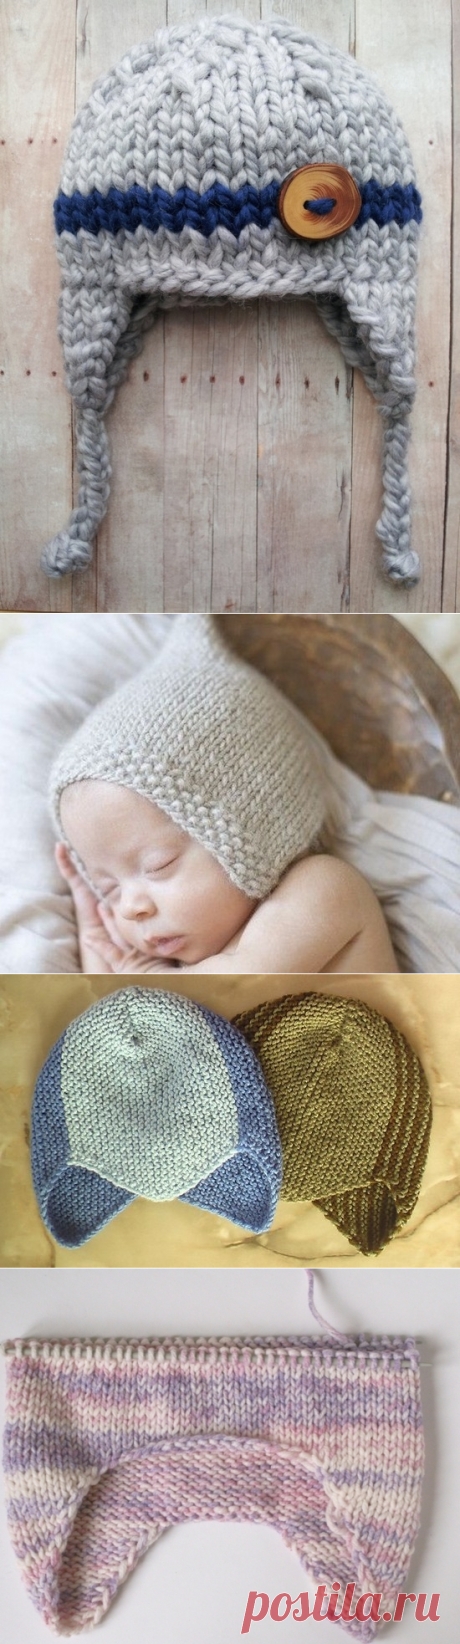 Вязаные шапочки для новорожденных: схемы с описанием | LS